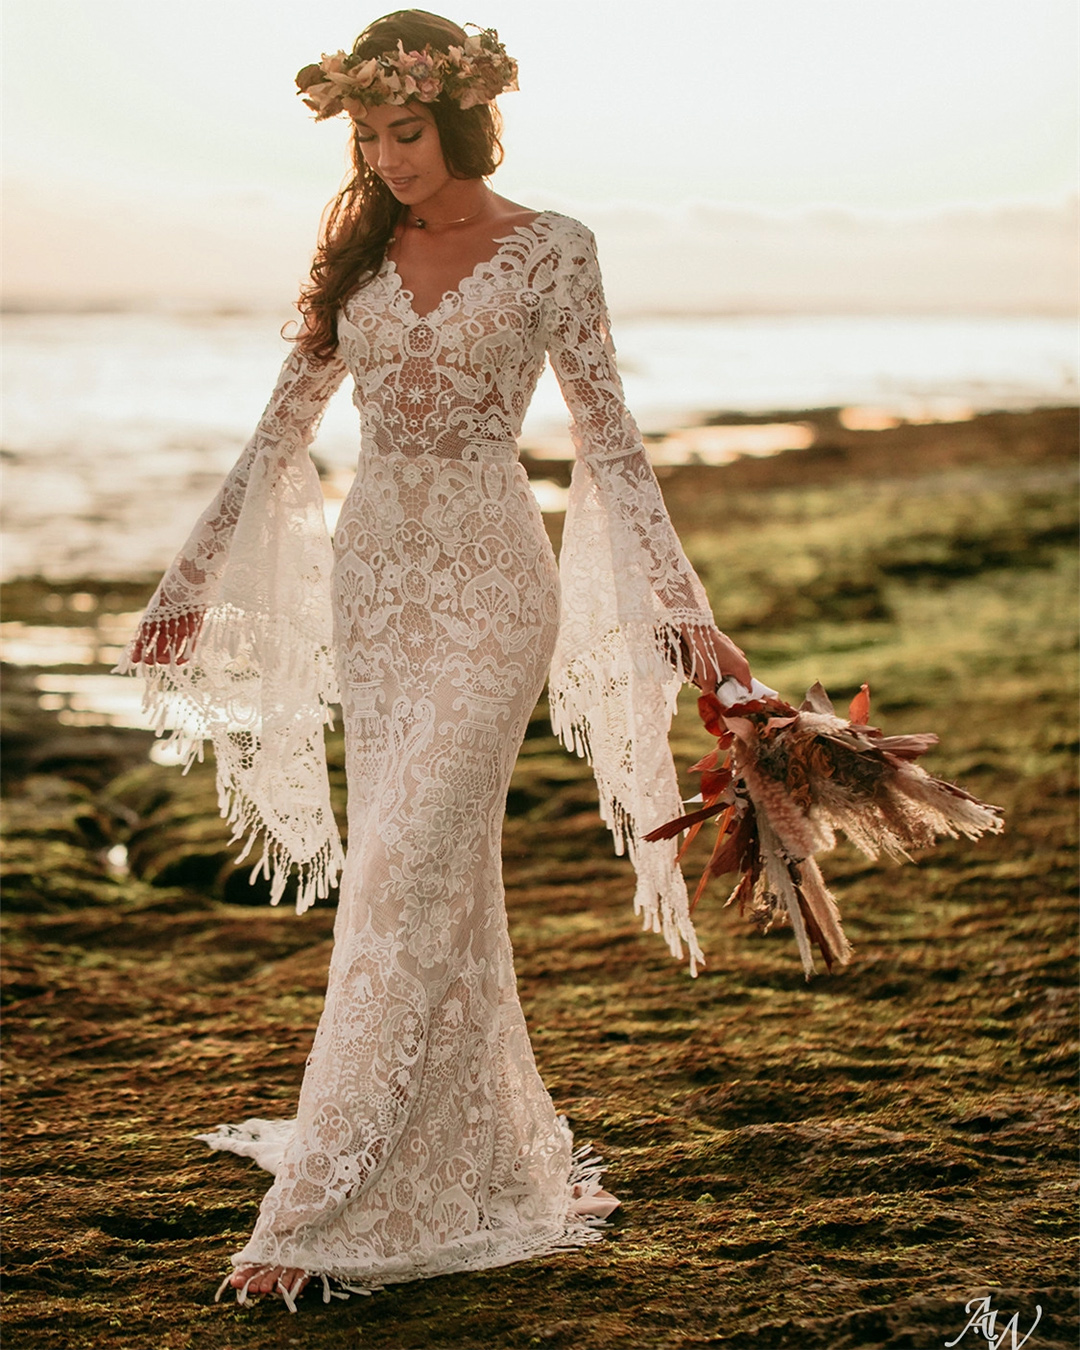 floral wedding dresses sheath with long sleeves lace boho awbridal